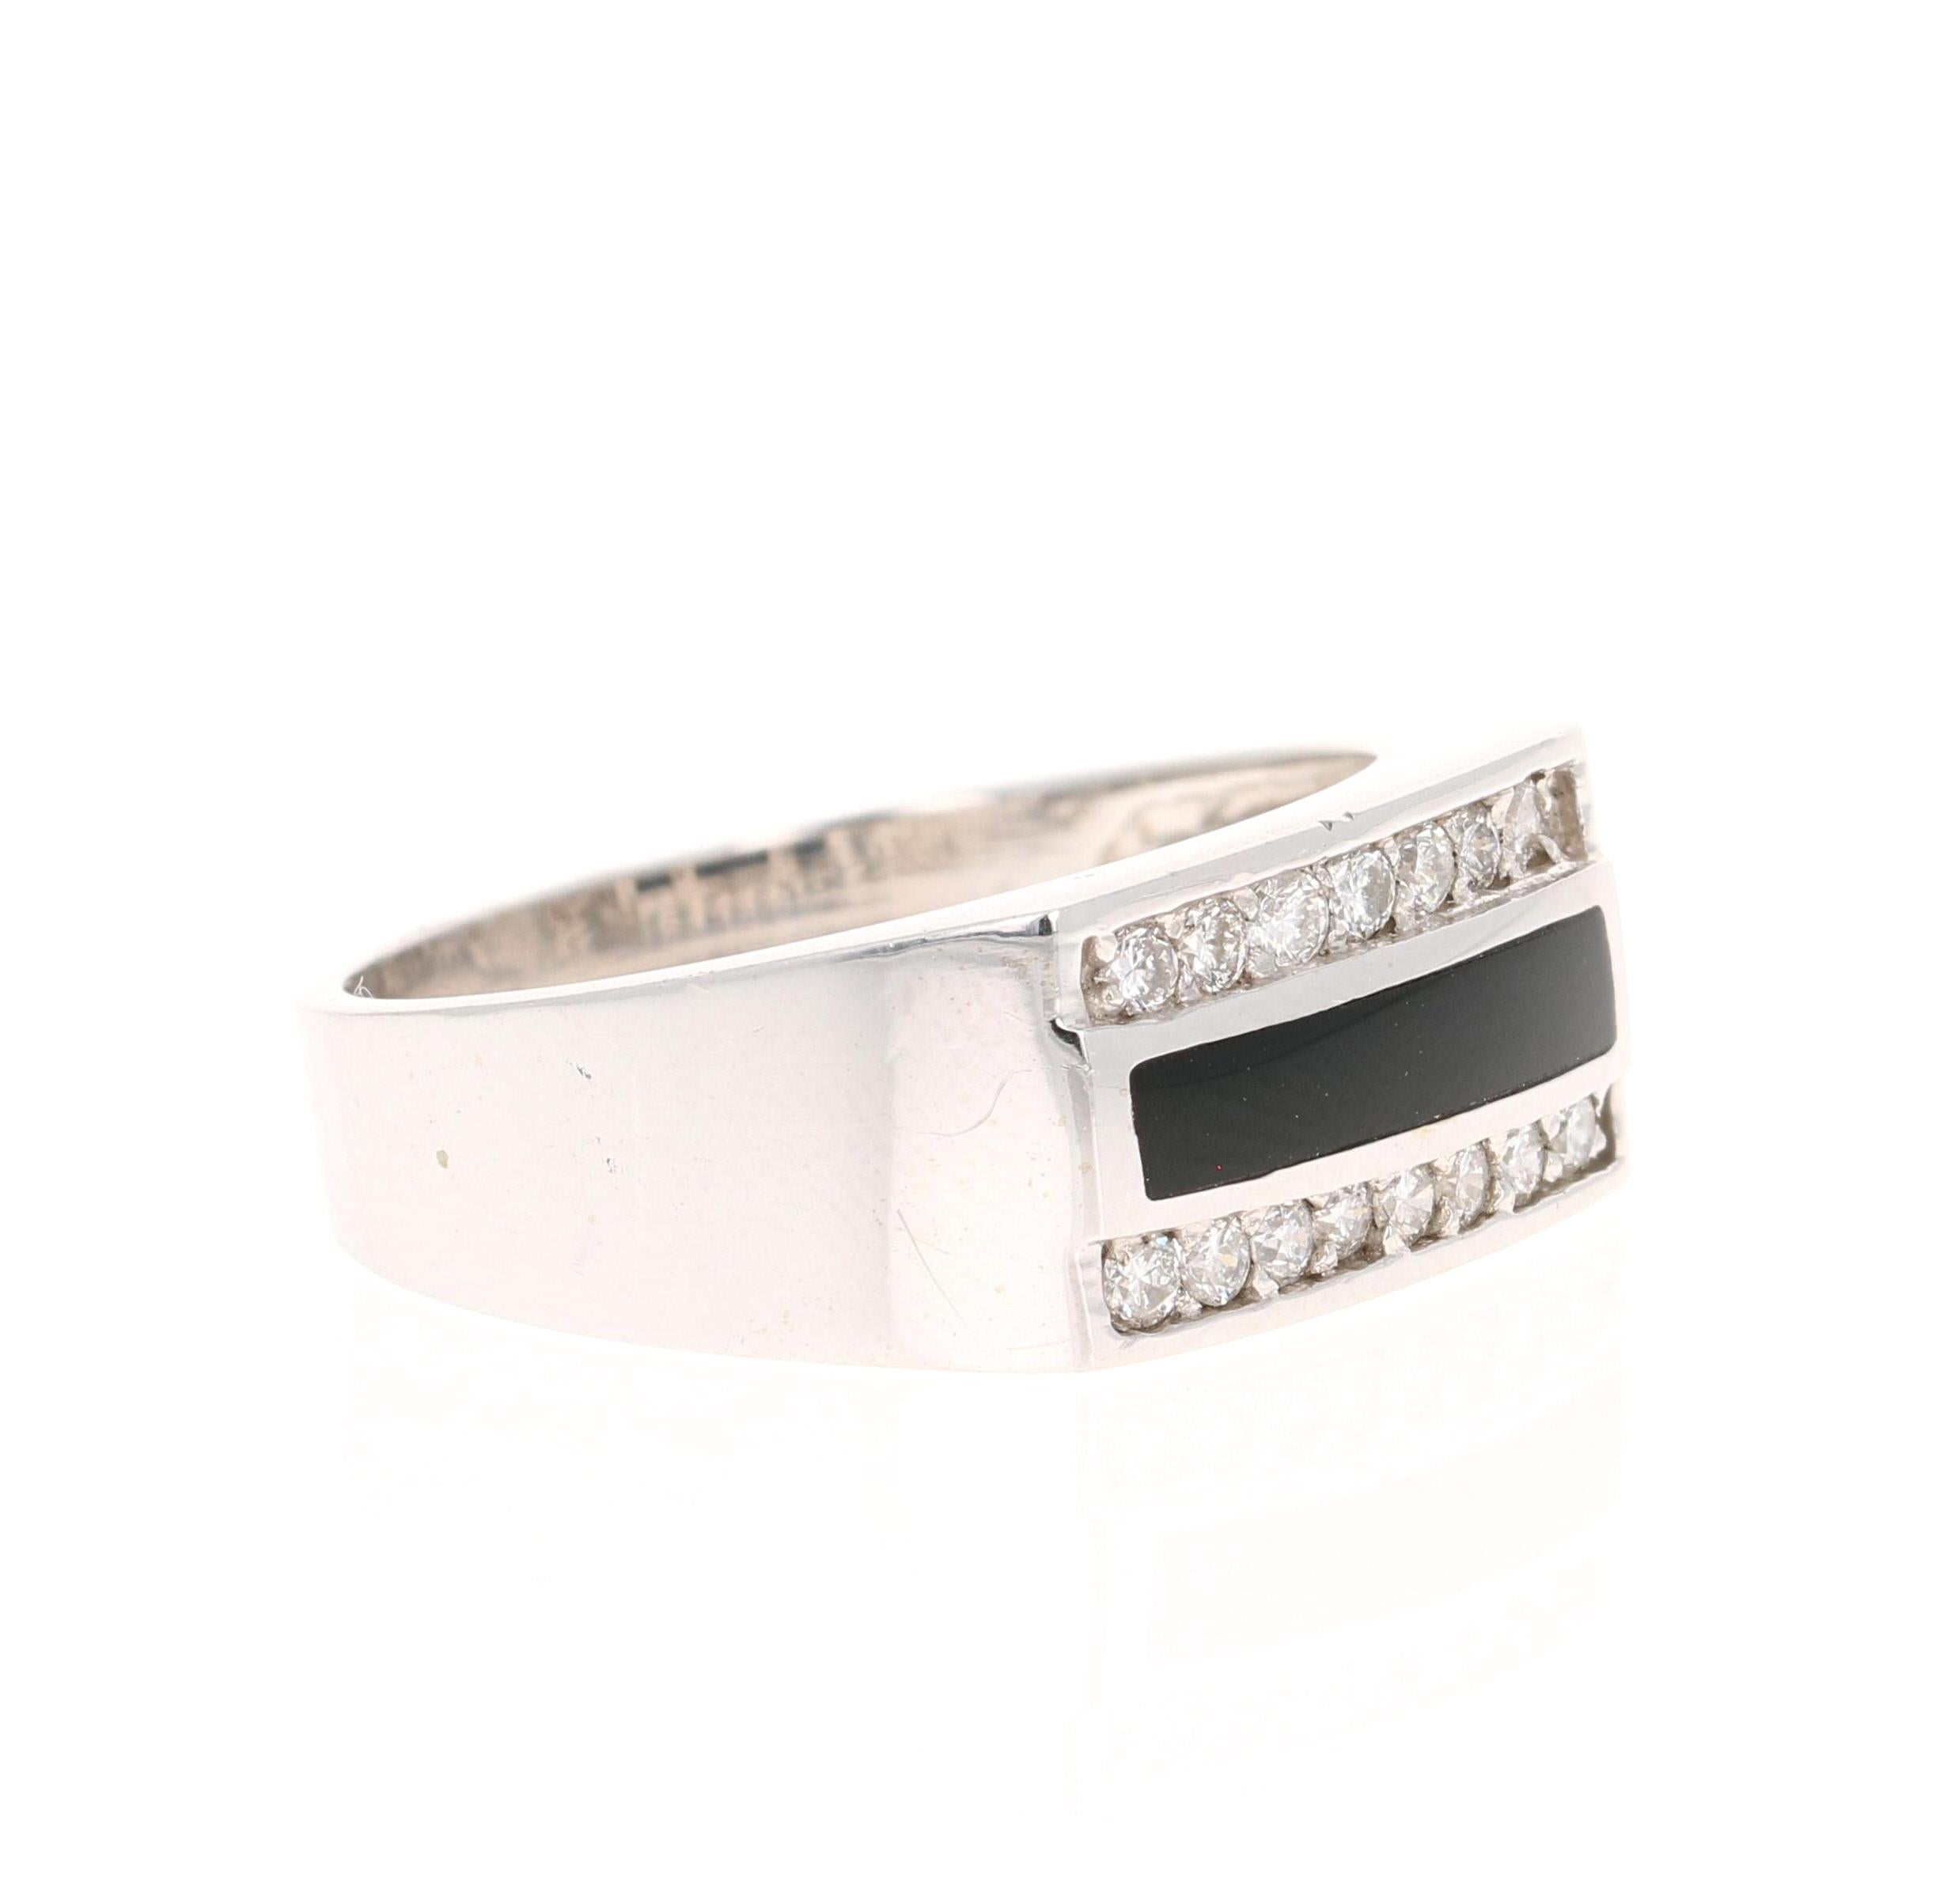 Dieser Ring ist mit 15 weißen Diamanten im Rundschliff besetzt, die 0,39 Karat wiegen, und in der Mitte des Rings ist ein schwarzer Onyx eingebettet. 

Es ist wunderschön in 14 Karat Weißgold kuratiert und wiegt etwa  6.4 Gramm. 

Der Ring hat die